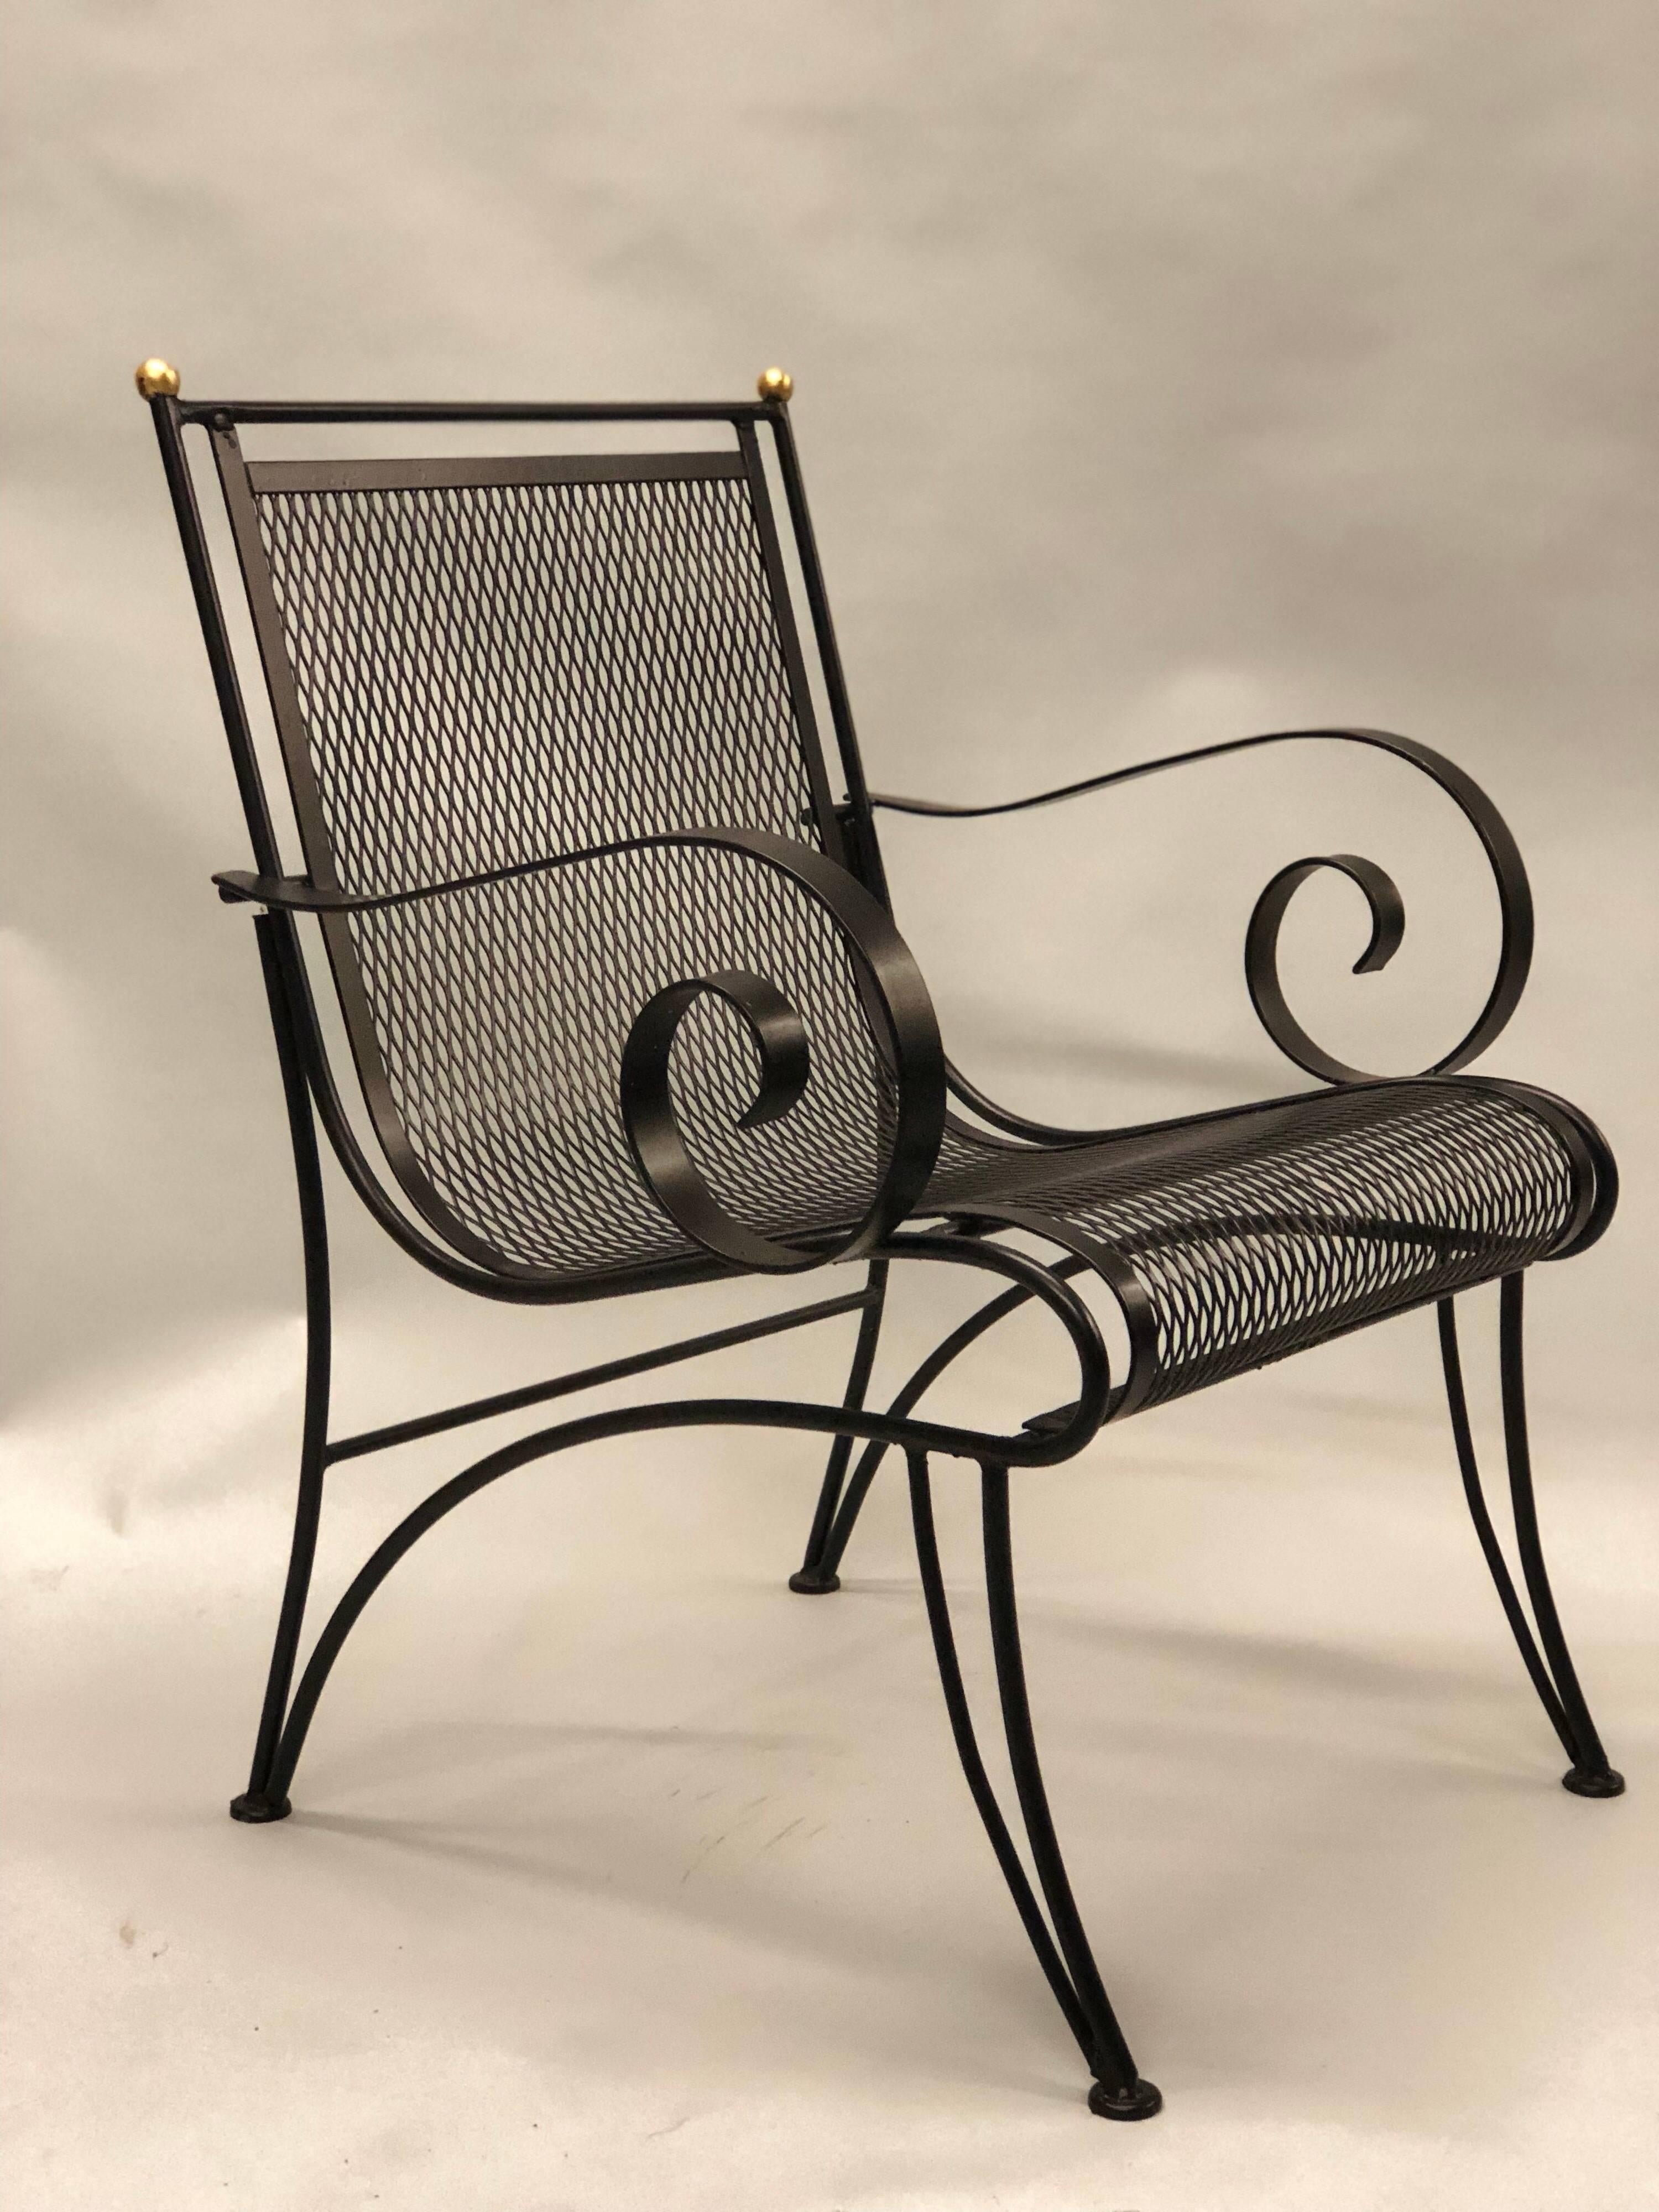 Elégante paire de fauteuils néoclassiques français en fer forgé, de style moderne du milieu du siècle, attribués à René Prou.

Les chaises sont émaillées en noir et présentent une structure transparente minimale, des pieds sabres à l'avant et à